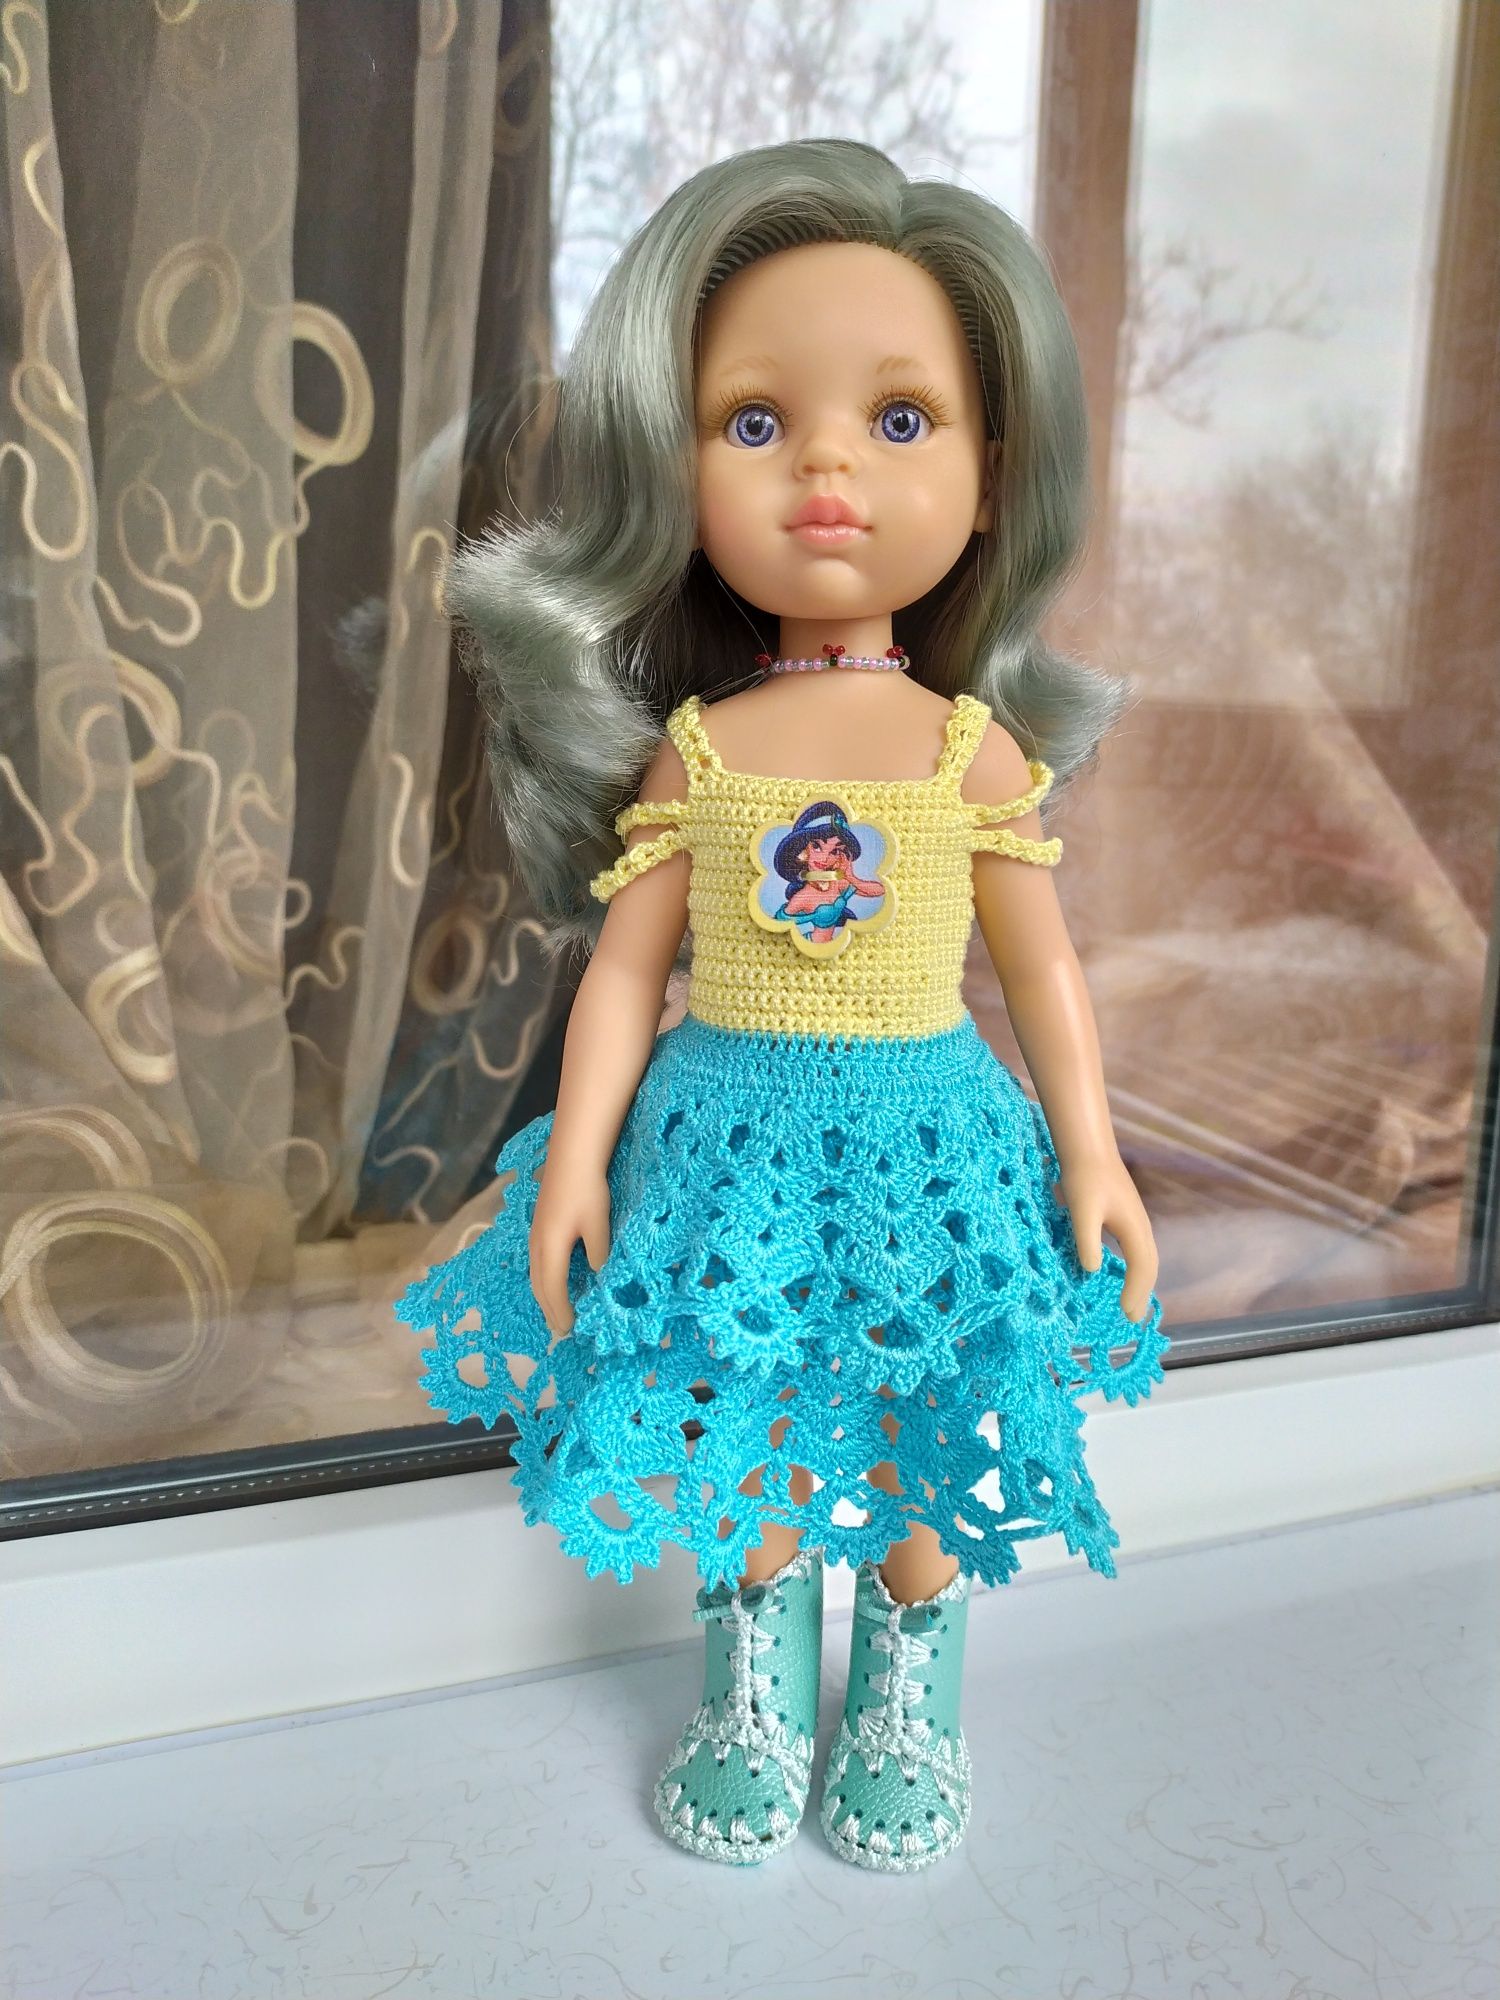 Літня сукня для лялечки Паола Рейна Paola Reina, Антоніо Хуан. Одяг